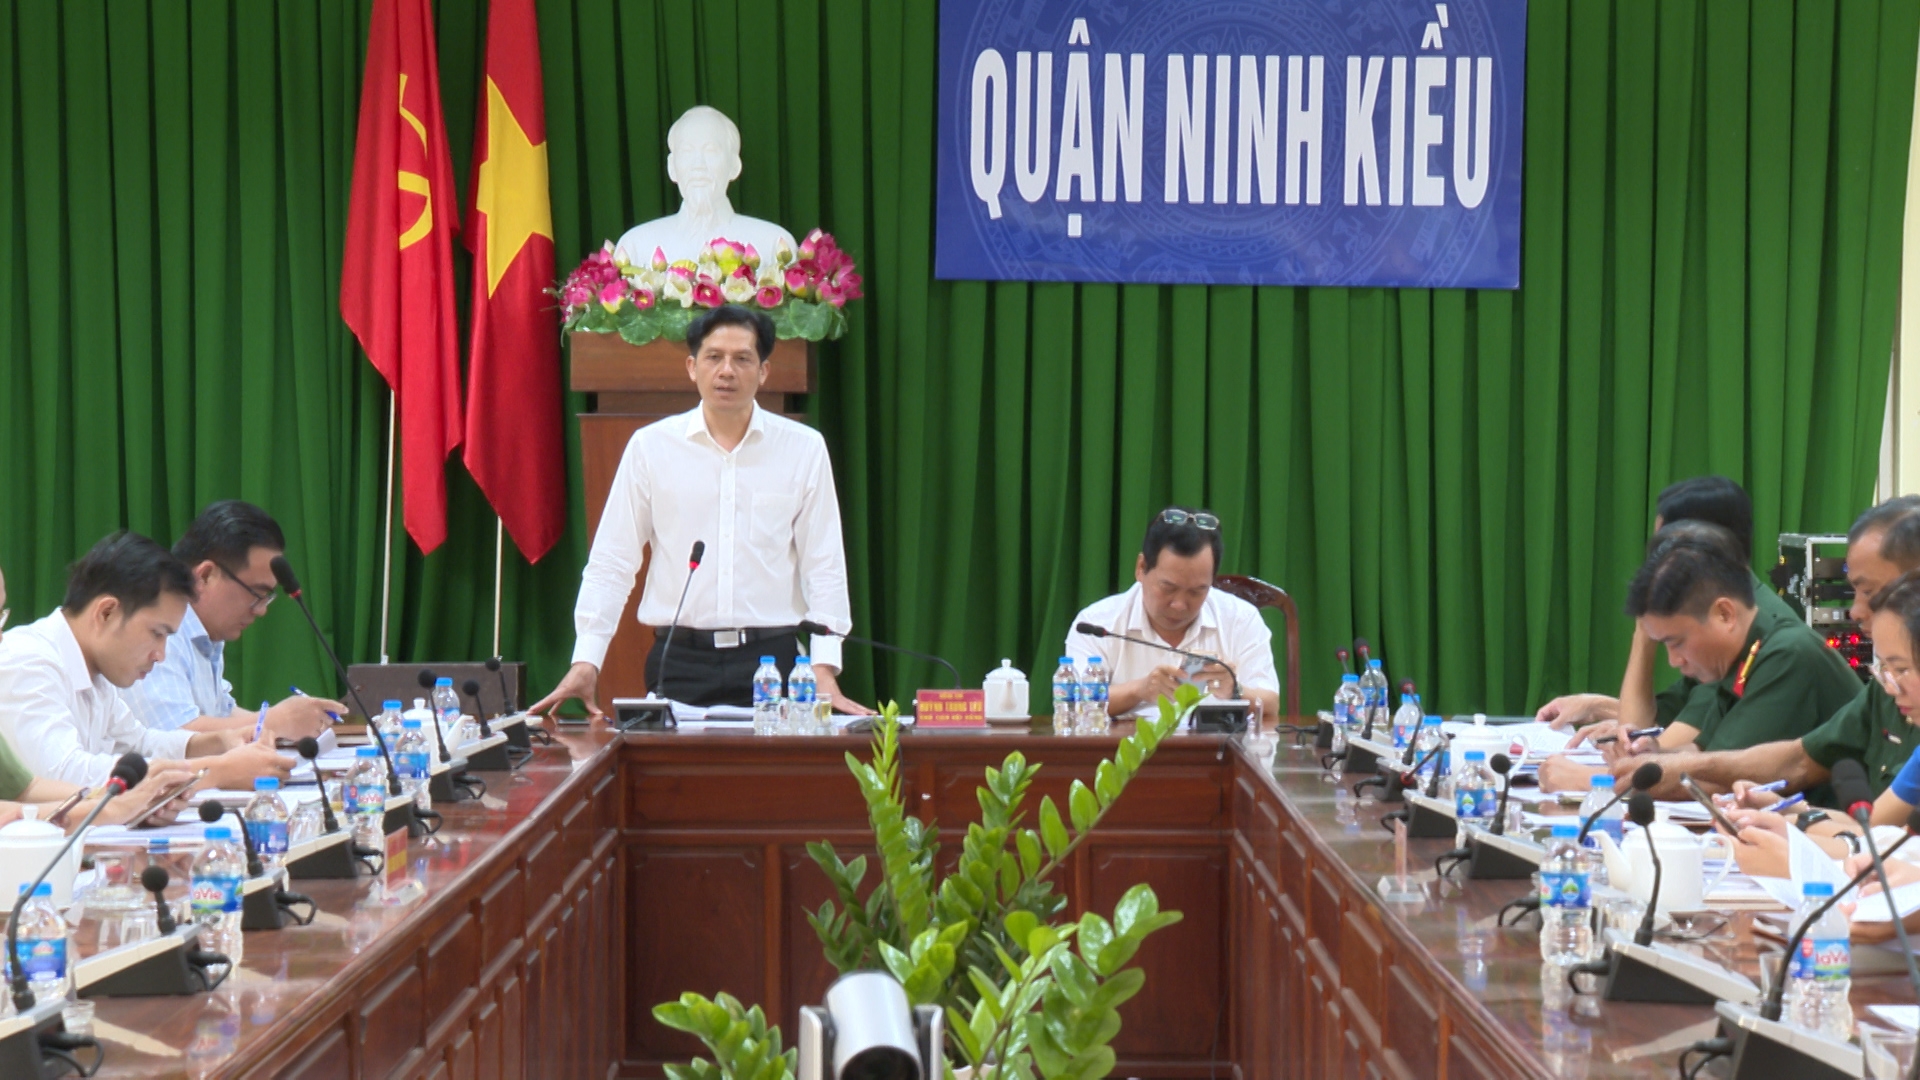 Ông Huỳnh Trung Trứ, Chủ tịch UBND quận, chủ tịch Hội đồng NVQS quận phát biểu kết luận hội nghị